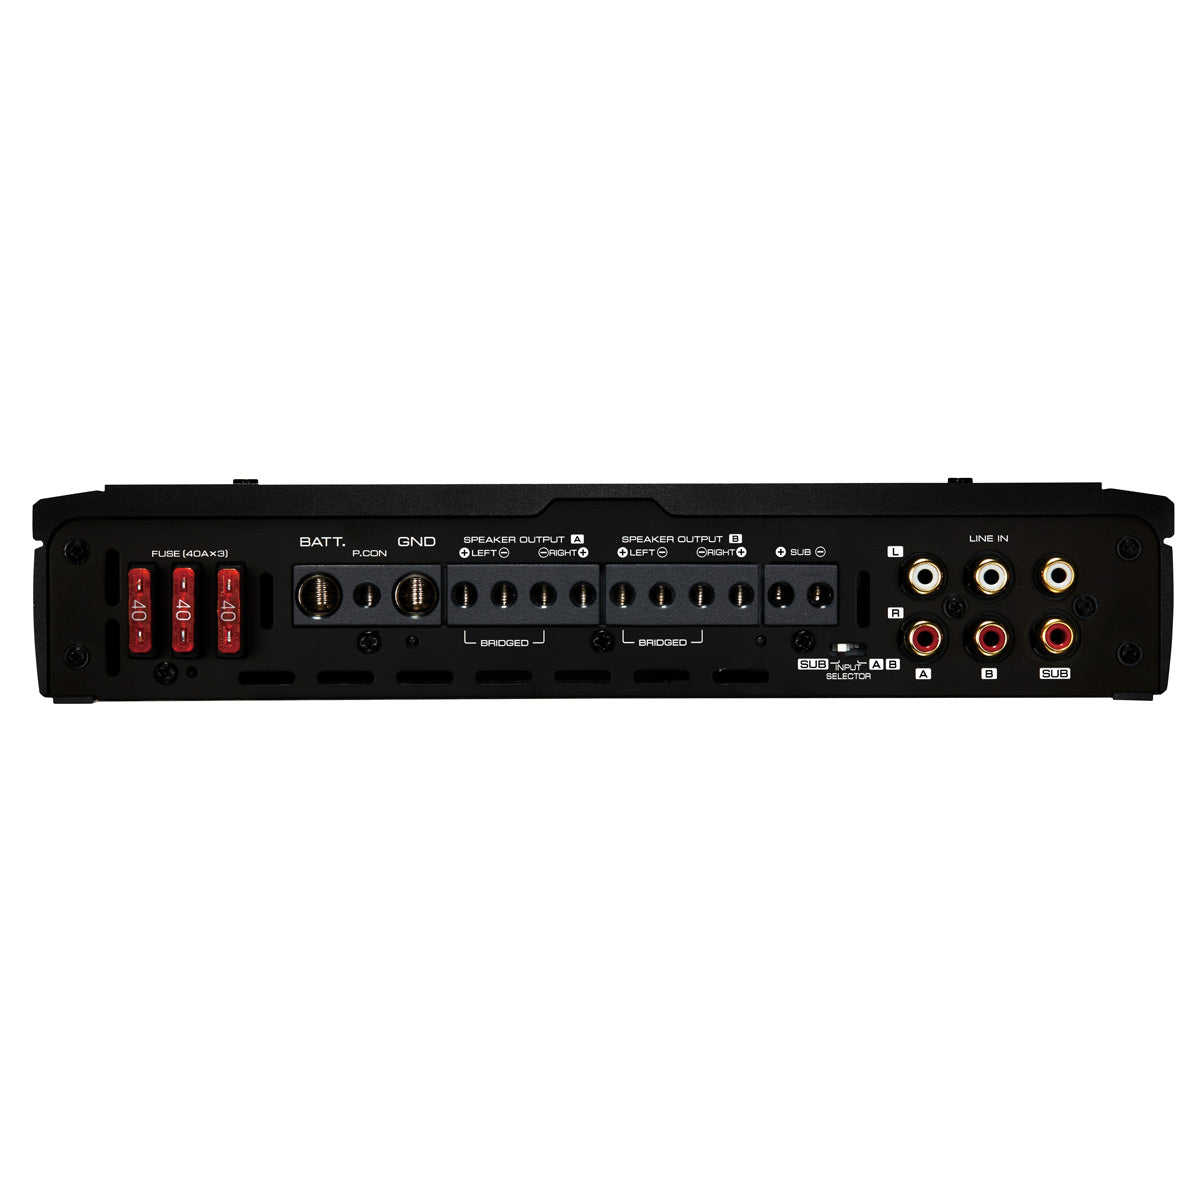 Kenwood XR901-5 eXcelon 900-Watt 5-Channel Amplifier